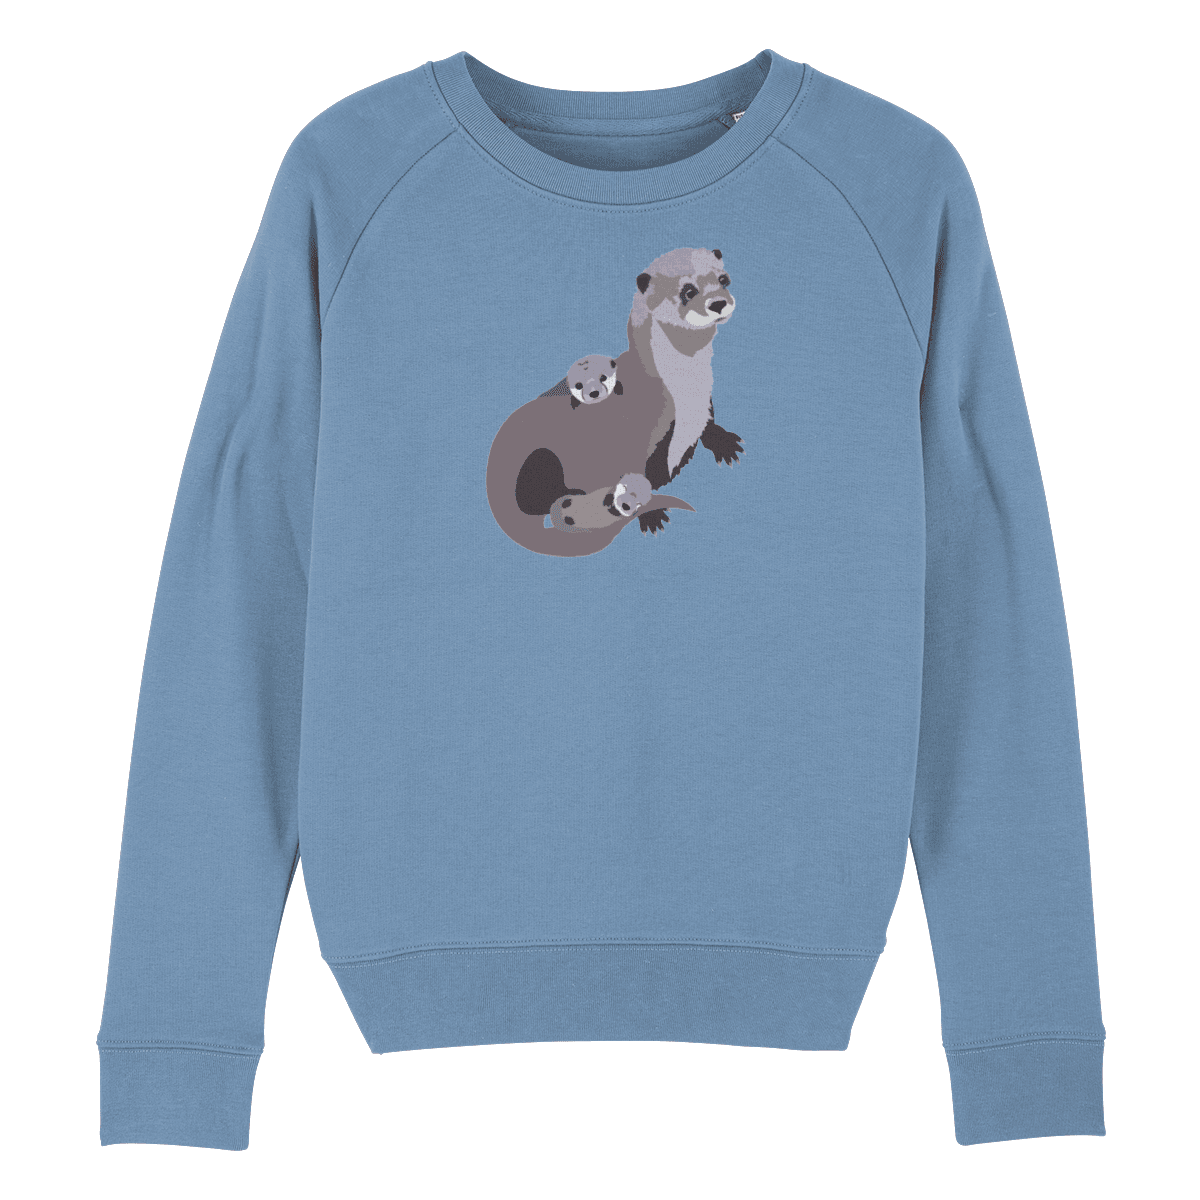 Cheshire Cat Sweater